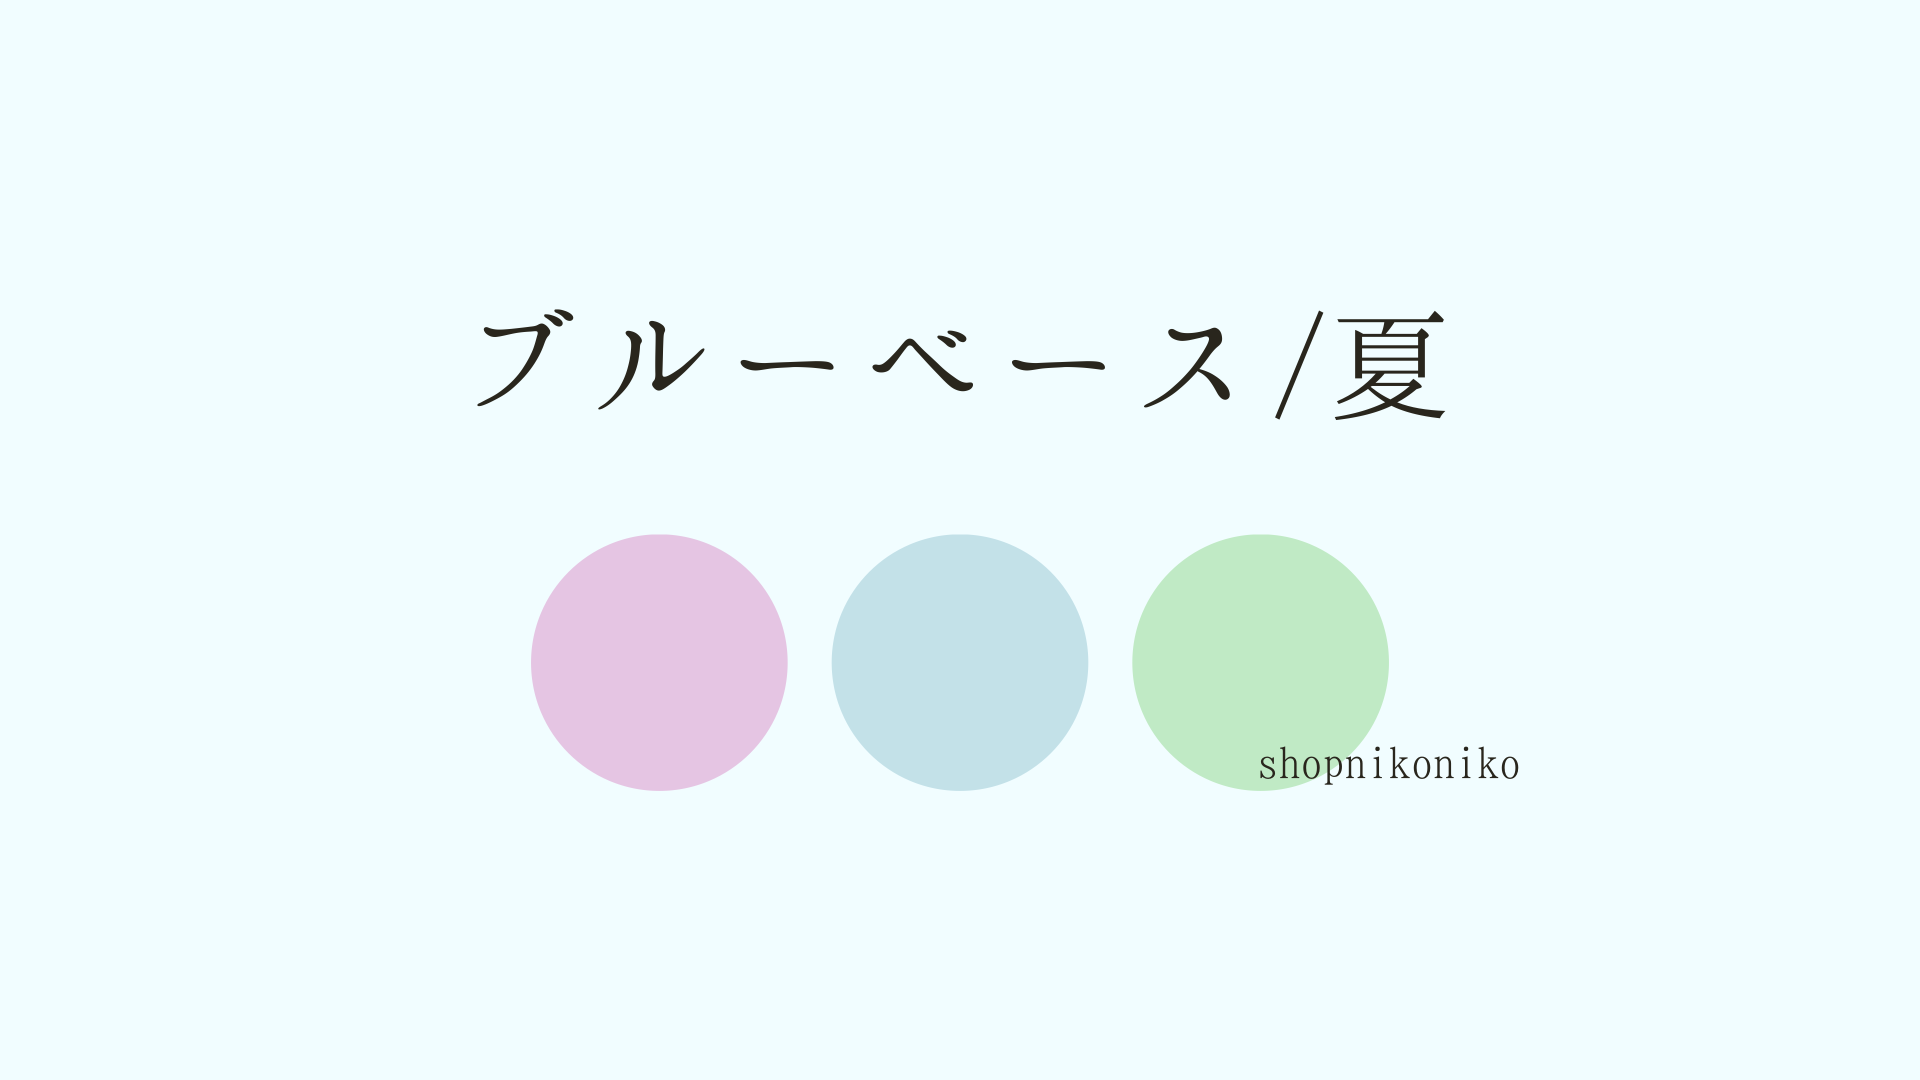 【ブルベ夏】その透明感、羨ましい♡ブルーベース夏が似合う色とおすすめアイテム11選